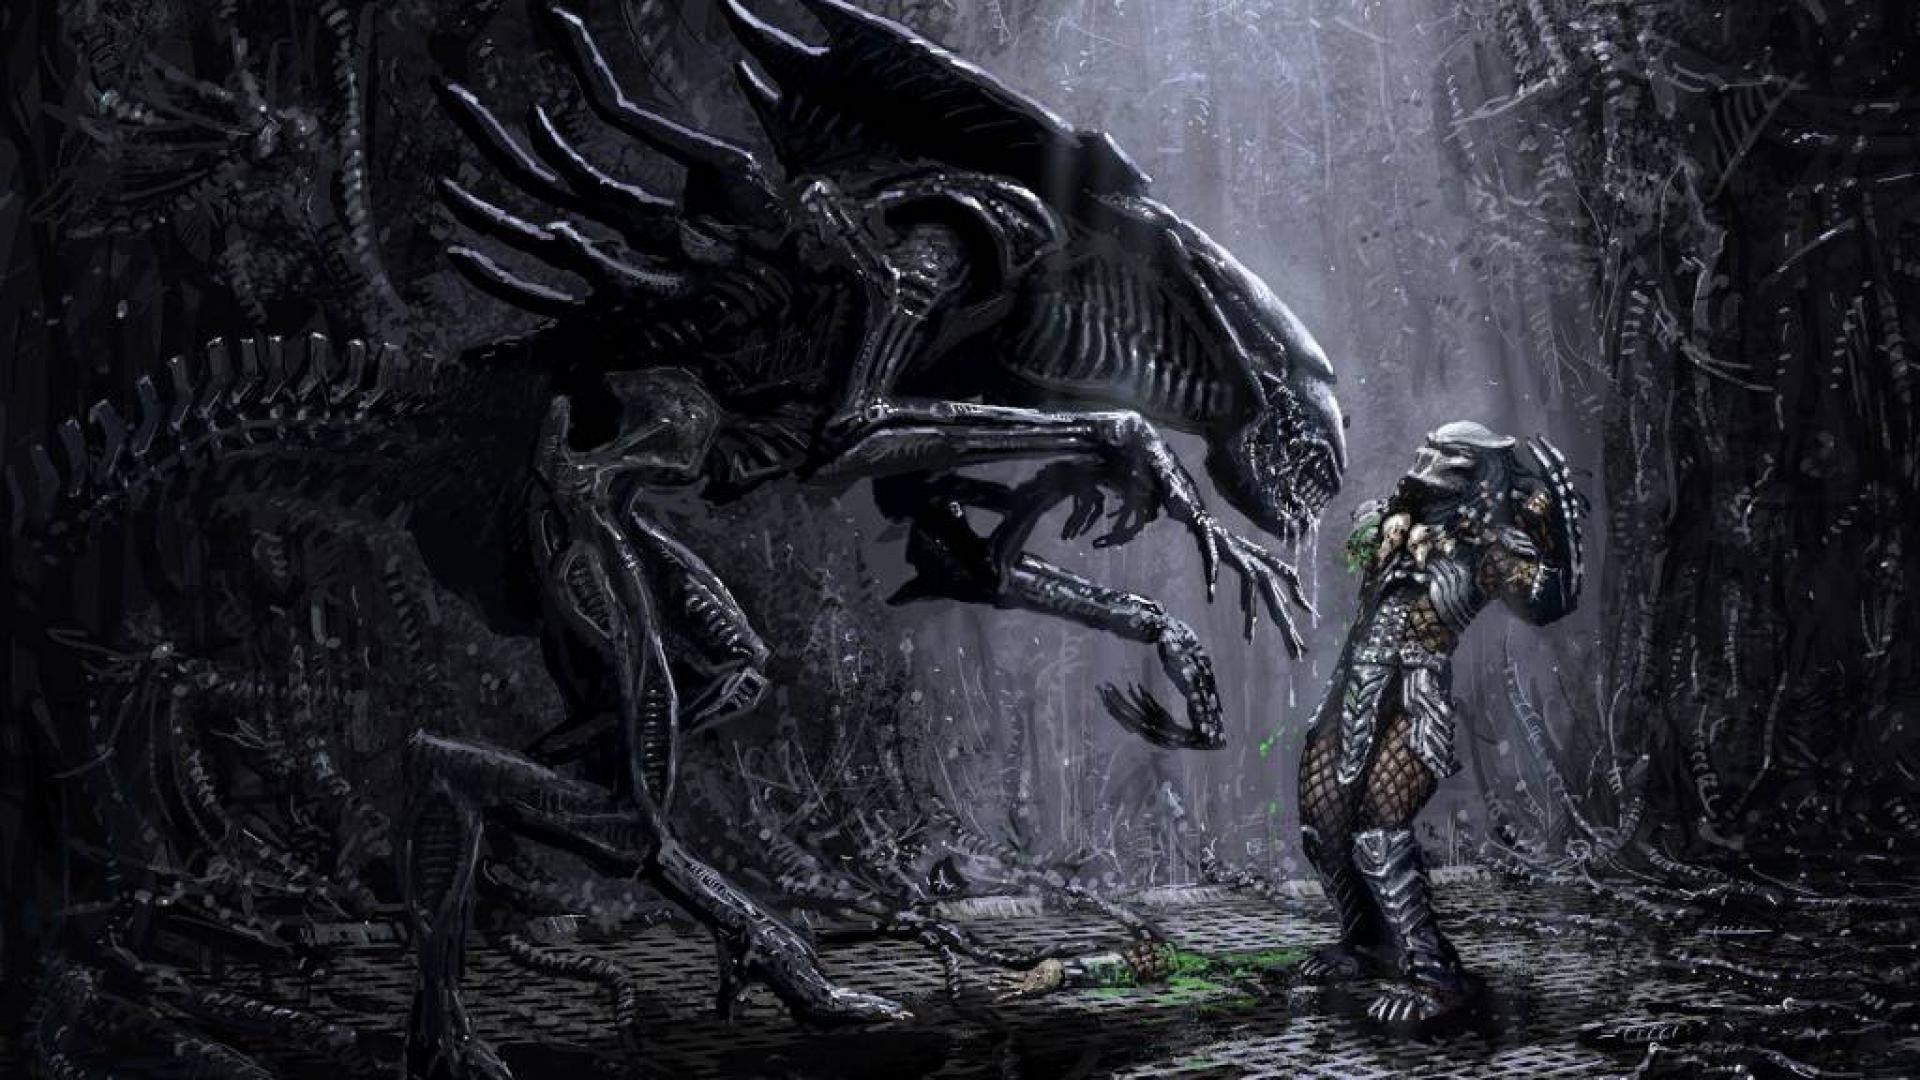 download alien vs predator 2004